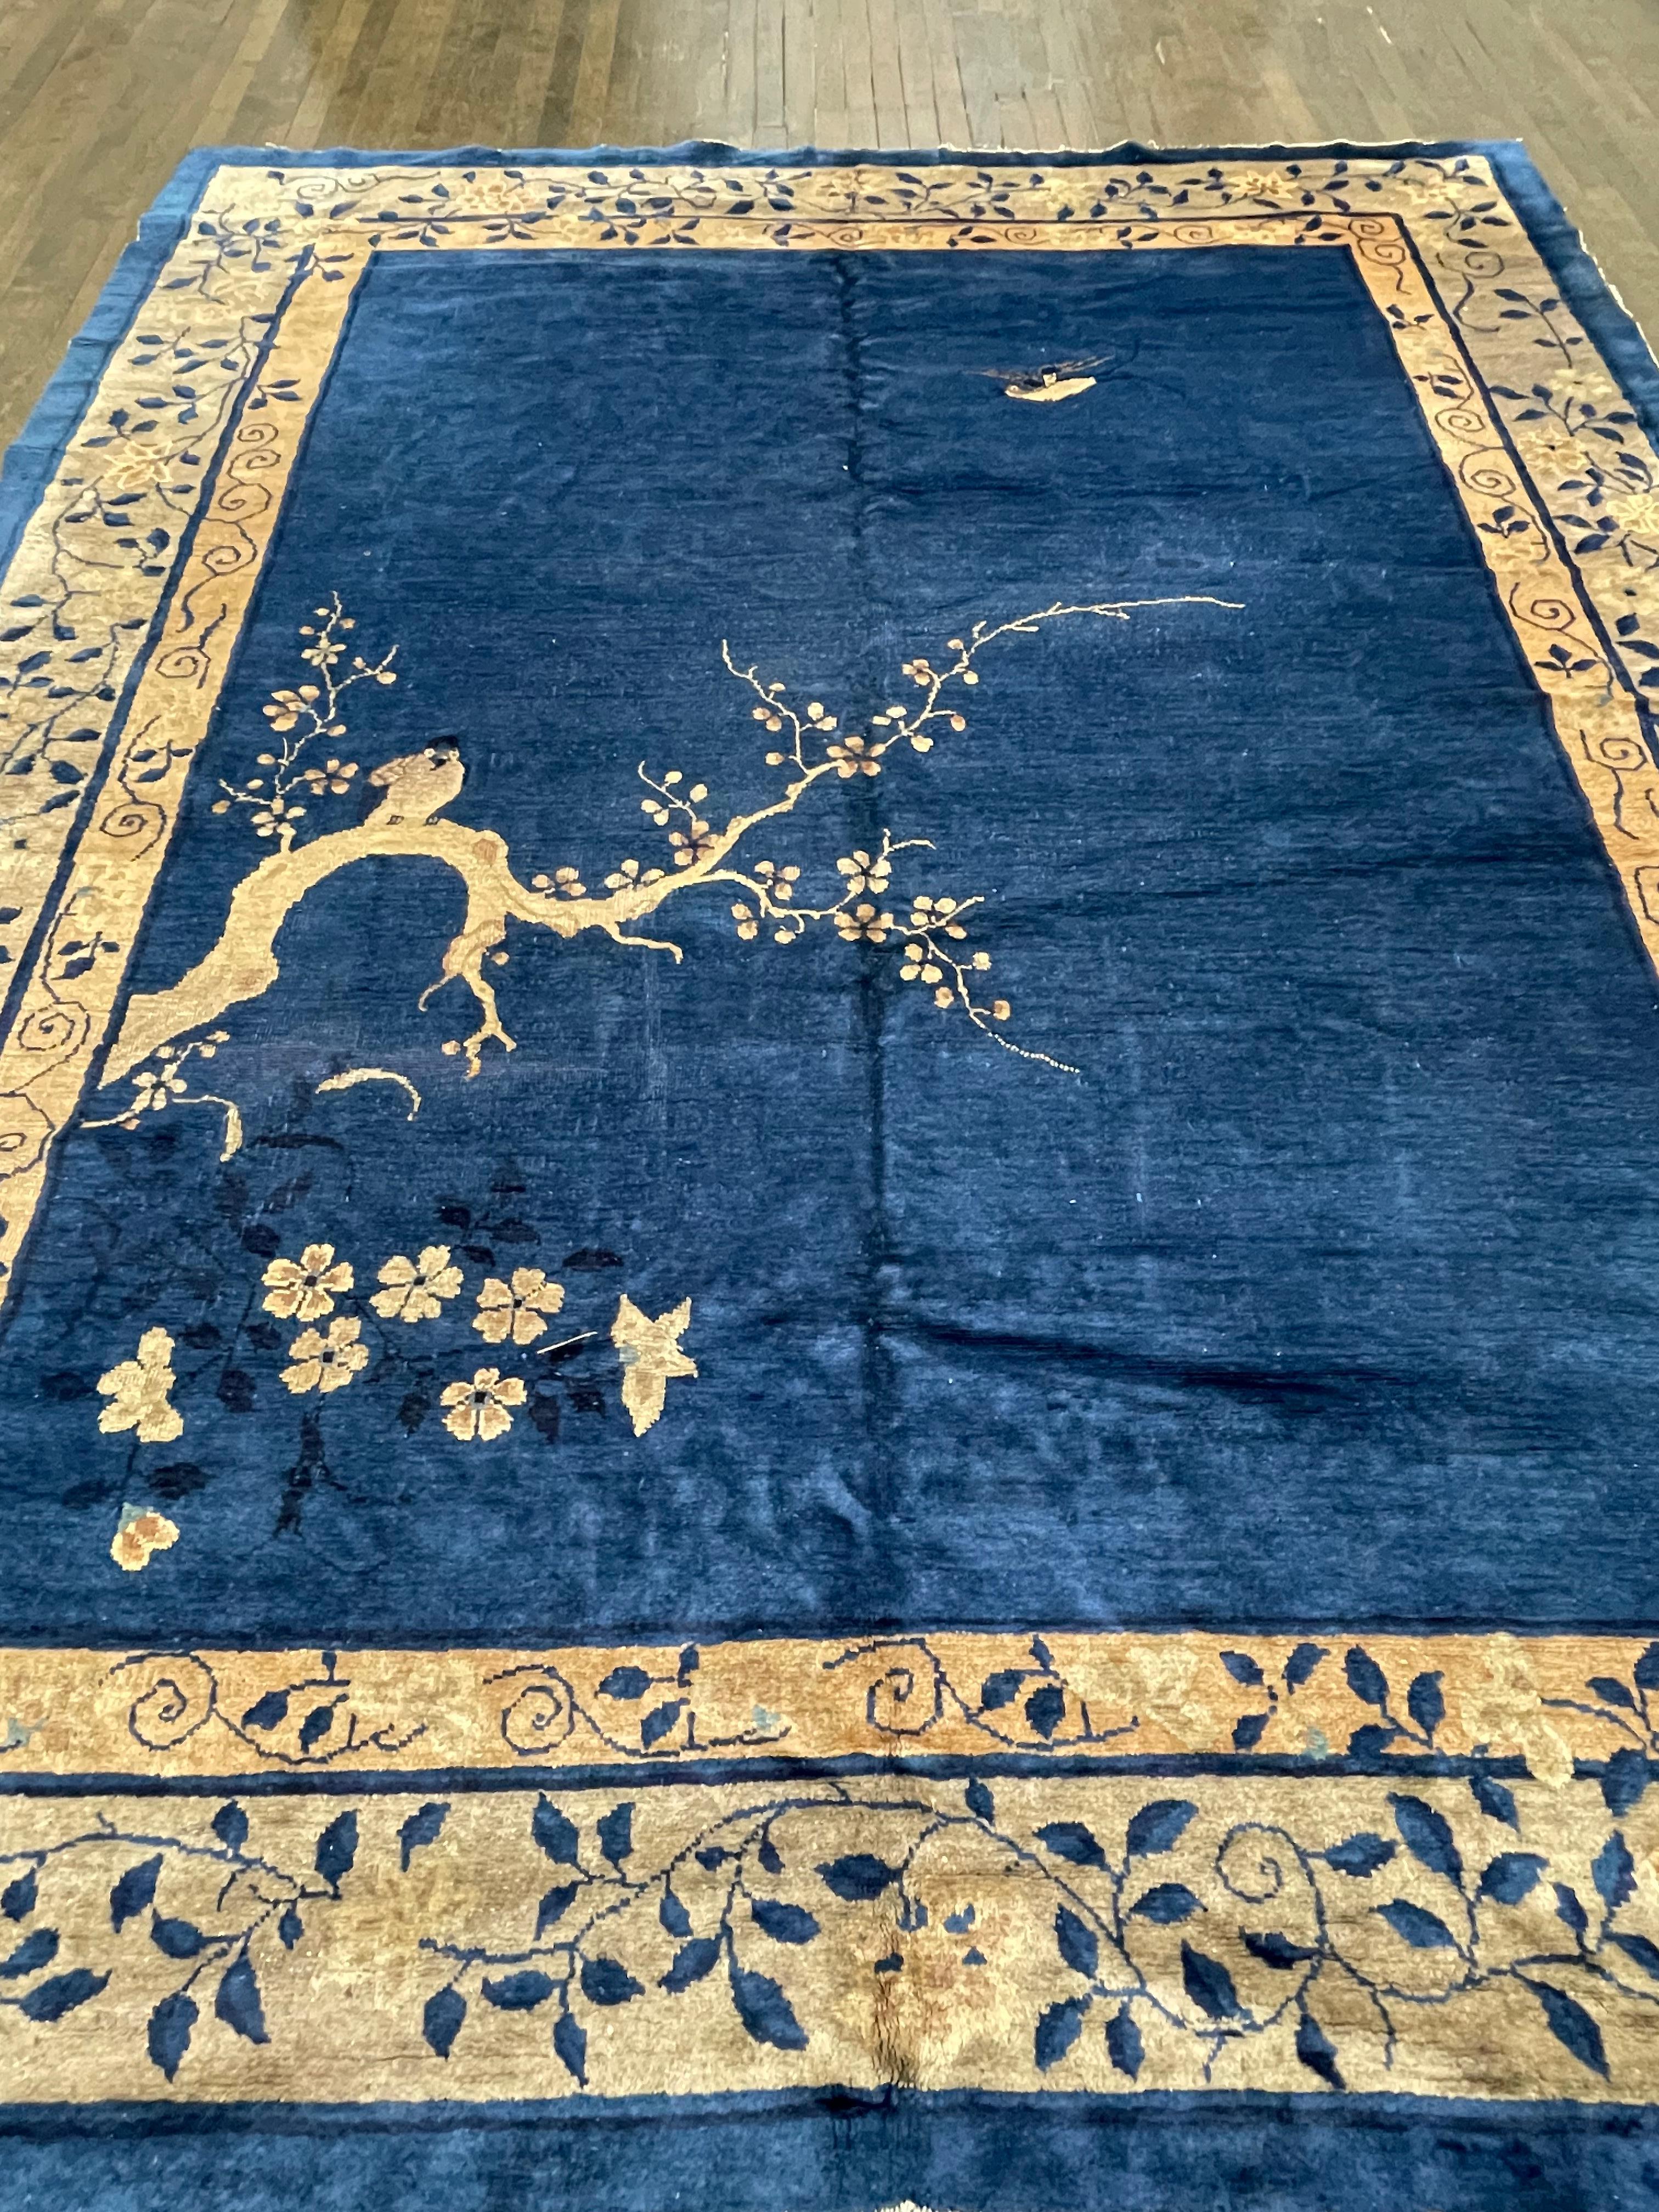 Ce tapis très rare et inhabituel est tissé à la main en Chine. Un bleu indigo uni décoré d'un grand arbre, symbole chinois de la connaissance et de la sagesse, fait que ce tapis ressemble davantage à une peinture tissée pour le sol. Véritable art